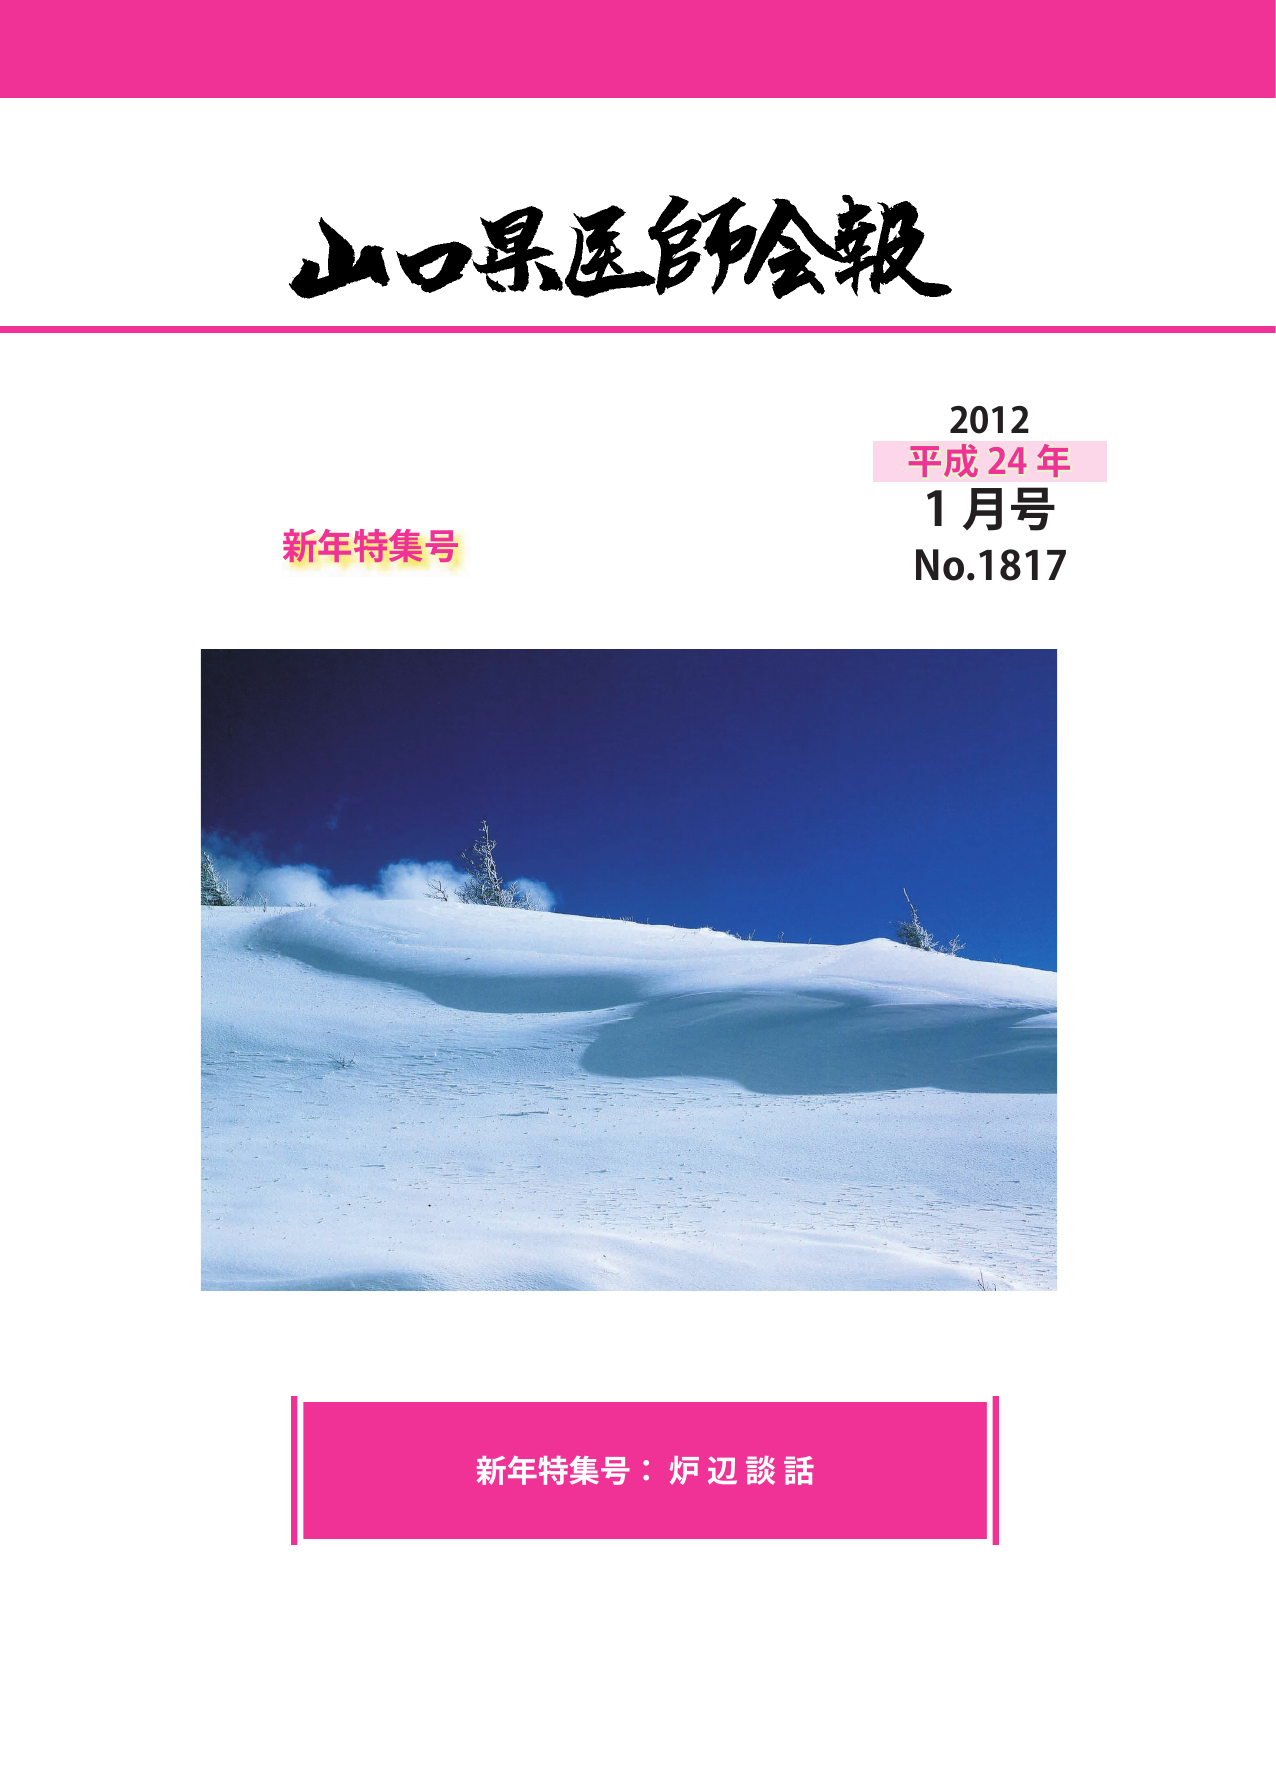 2012/01 1817号 - 山口県医師会